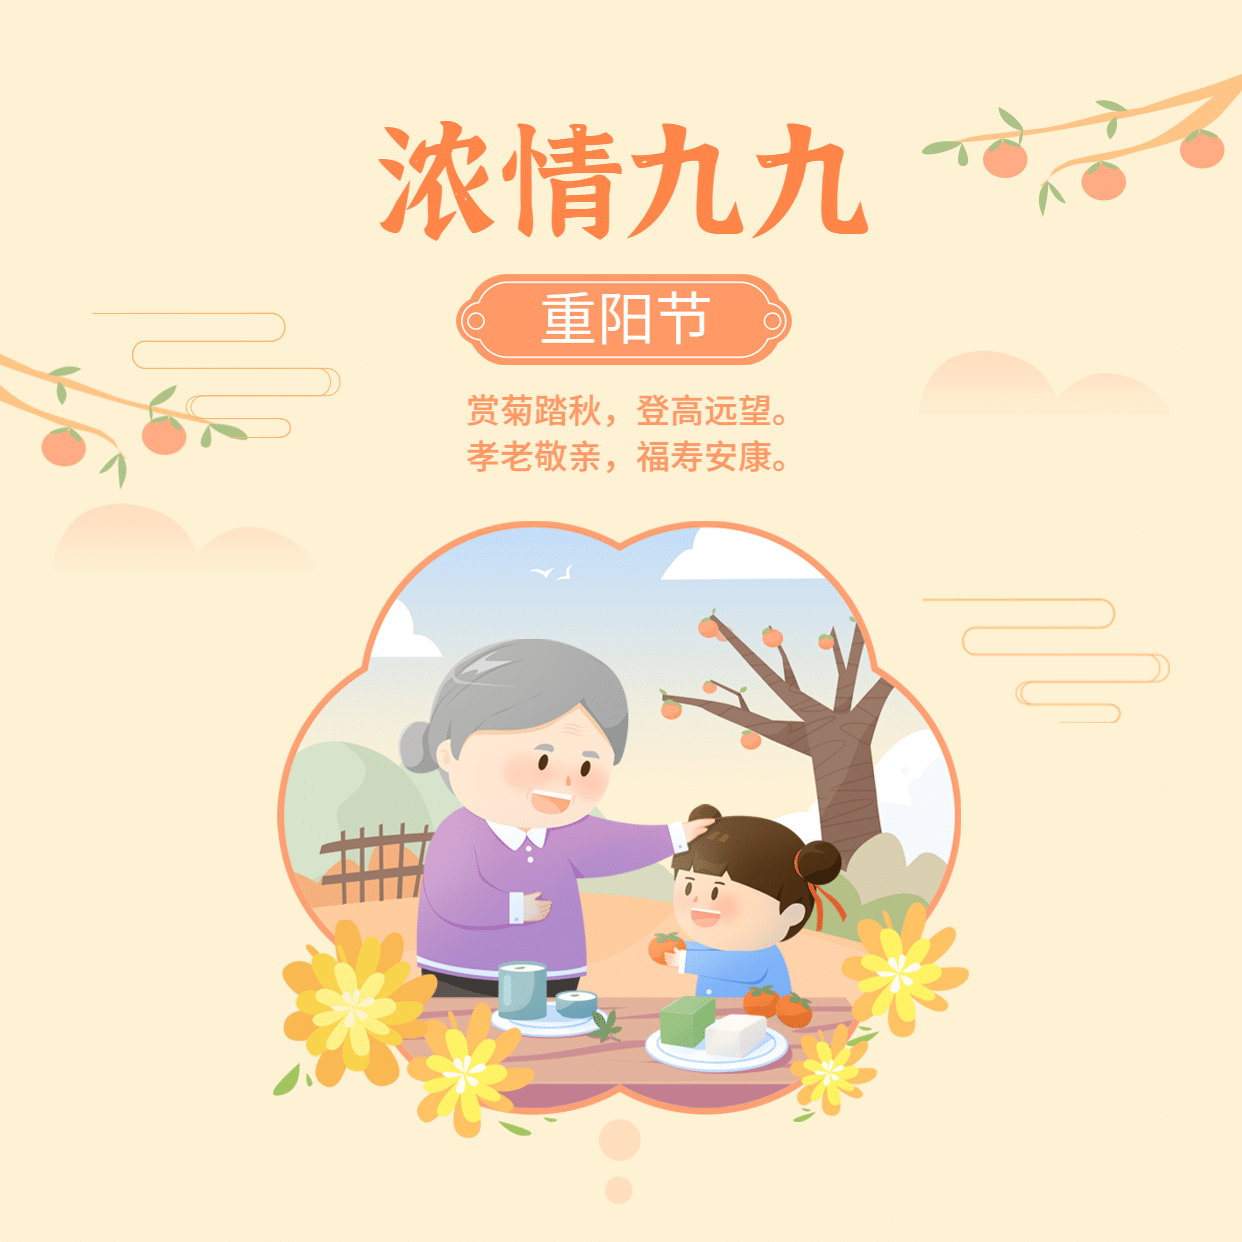 九九重阳节祝福图框老人小孩抠图插画方形海报